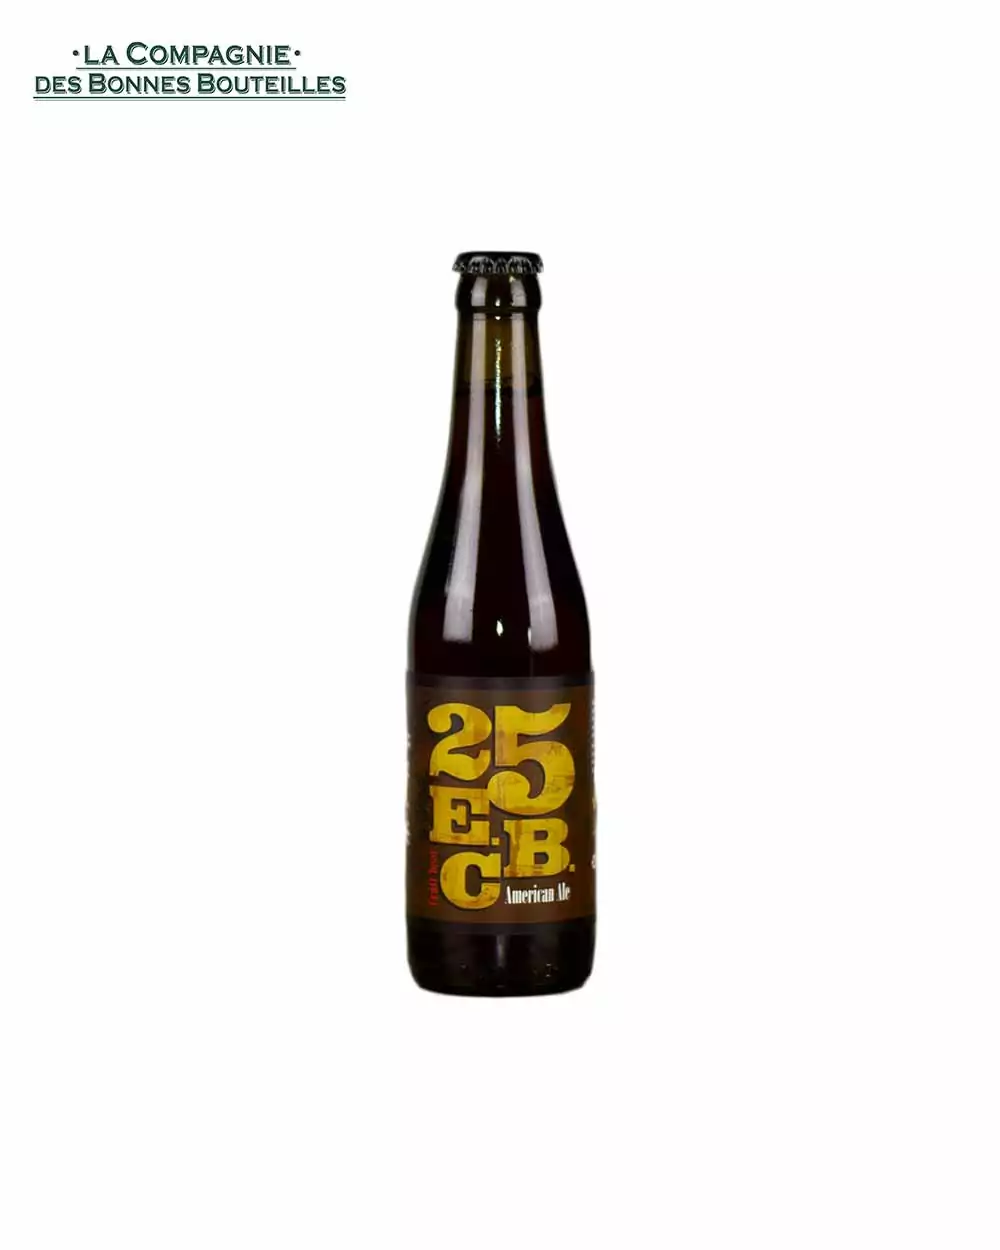 Bière Brasserie d'olt - 25 EBC Blonde 33cl